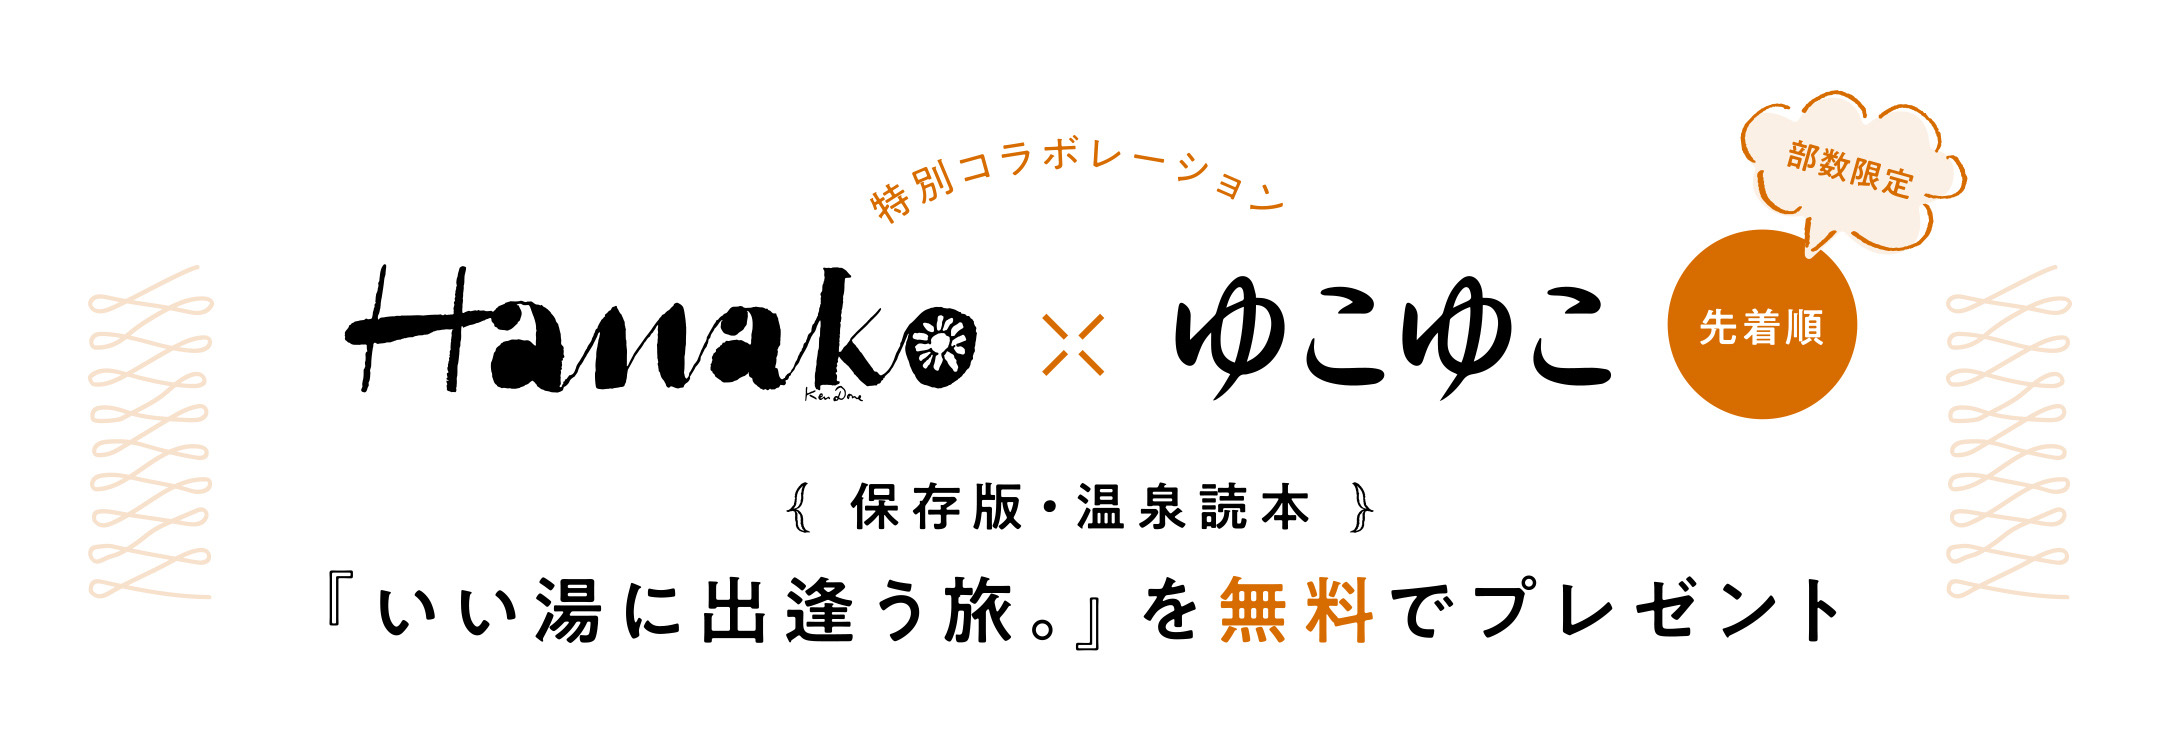 Hanako × ゆこゆこ 保存版・温泉読本『いい湯に出逢う旅。』を無料でプレゼント